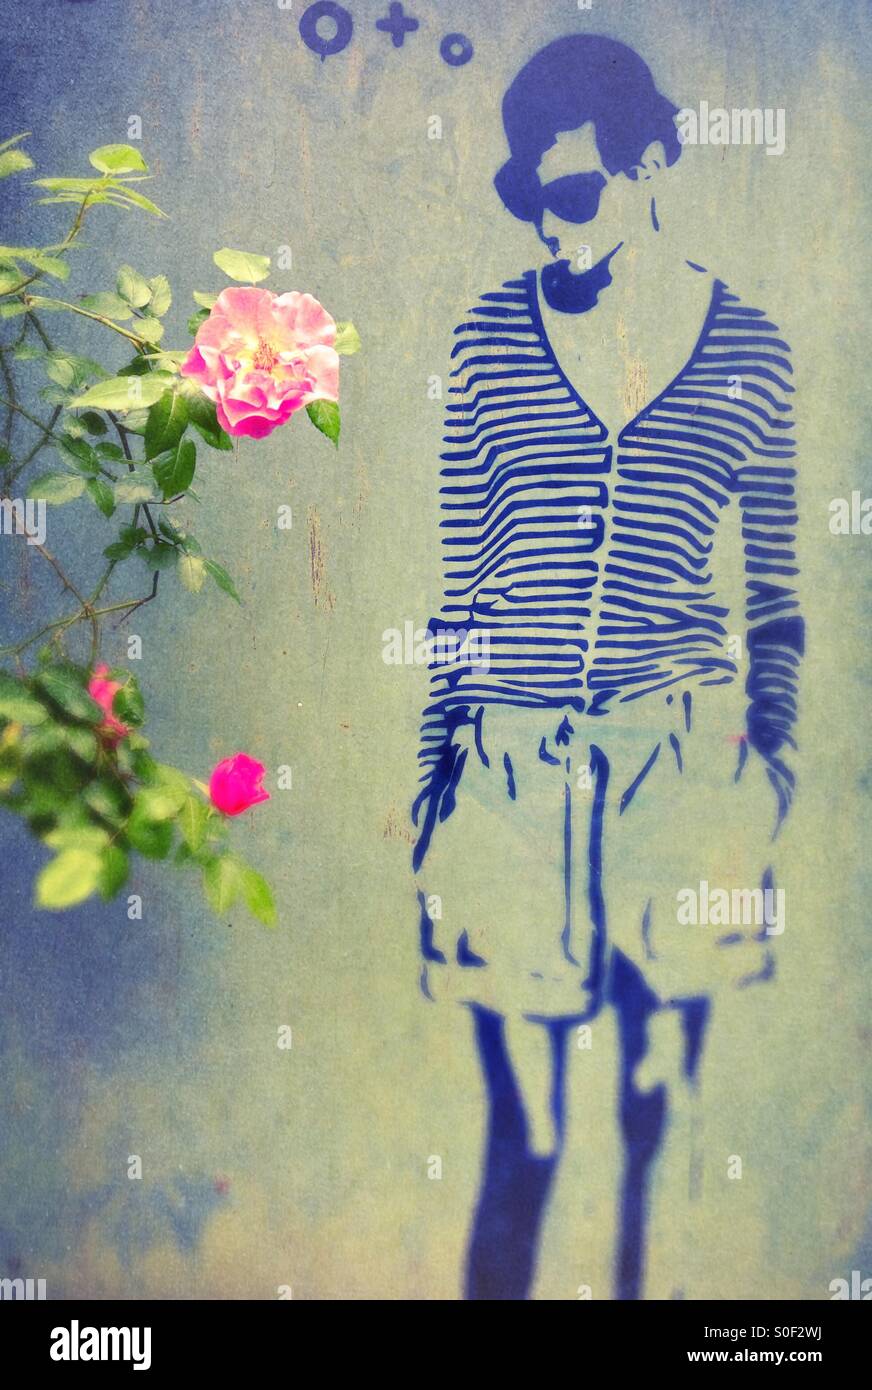 Cooles Berlin - Graffiti-Wandkunst in Berlin Deutschland - Audrey Hepburn Kunstwerk an einer Wand mit pinkfarbener Rose Stockfoto